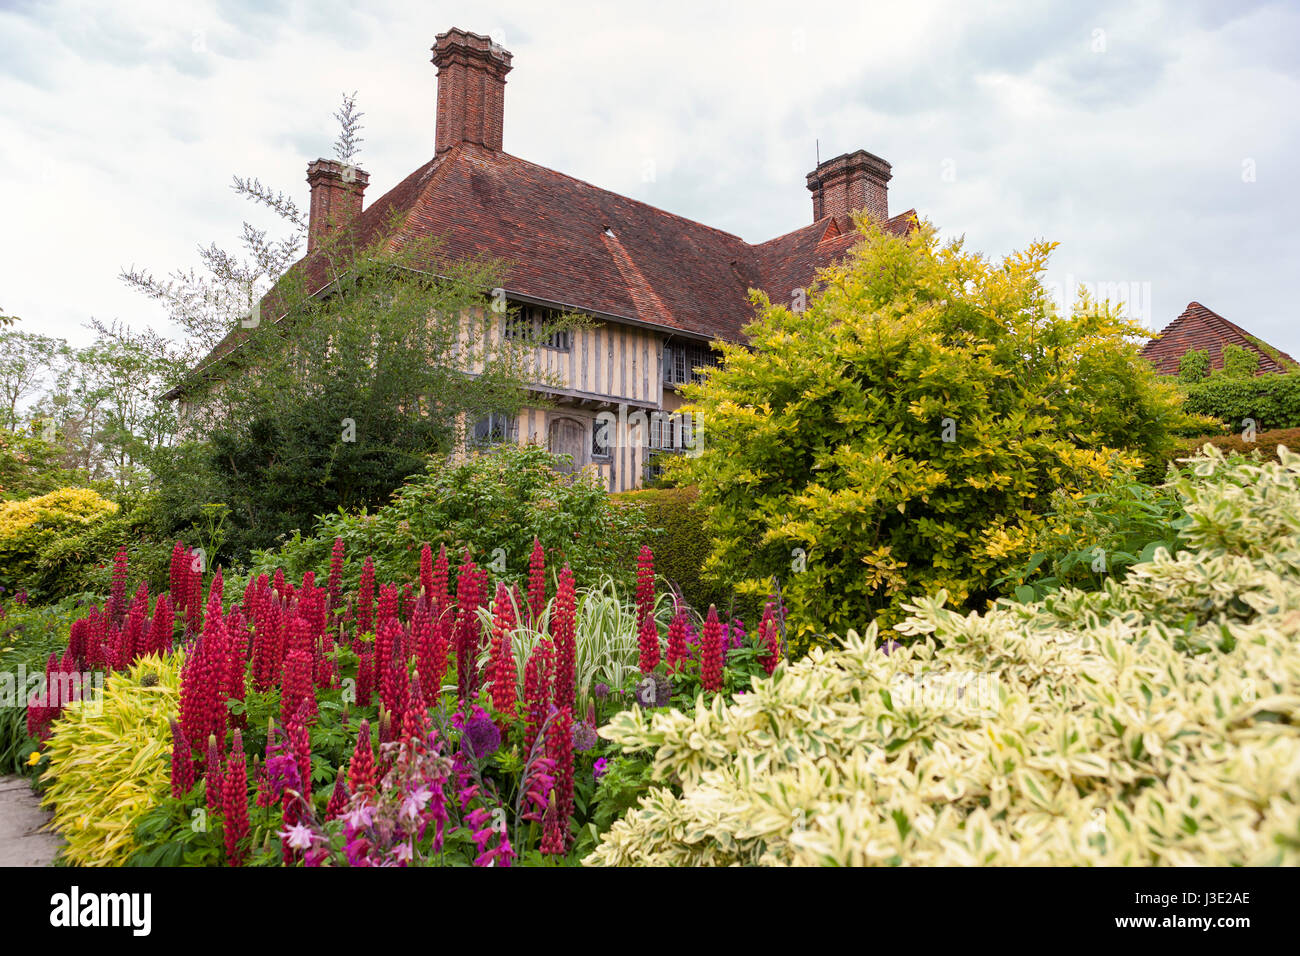 Le regretté Christopher Lloyd's Great Dixter Manoir et jardin, Nothiam, East Sussex, England, UK : tiré de la longue frontière Banque D'Images